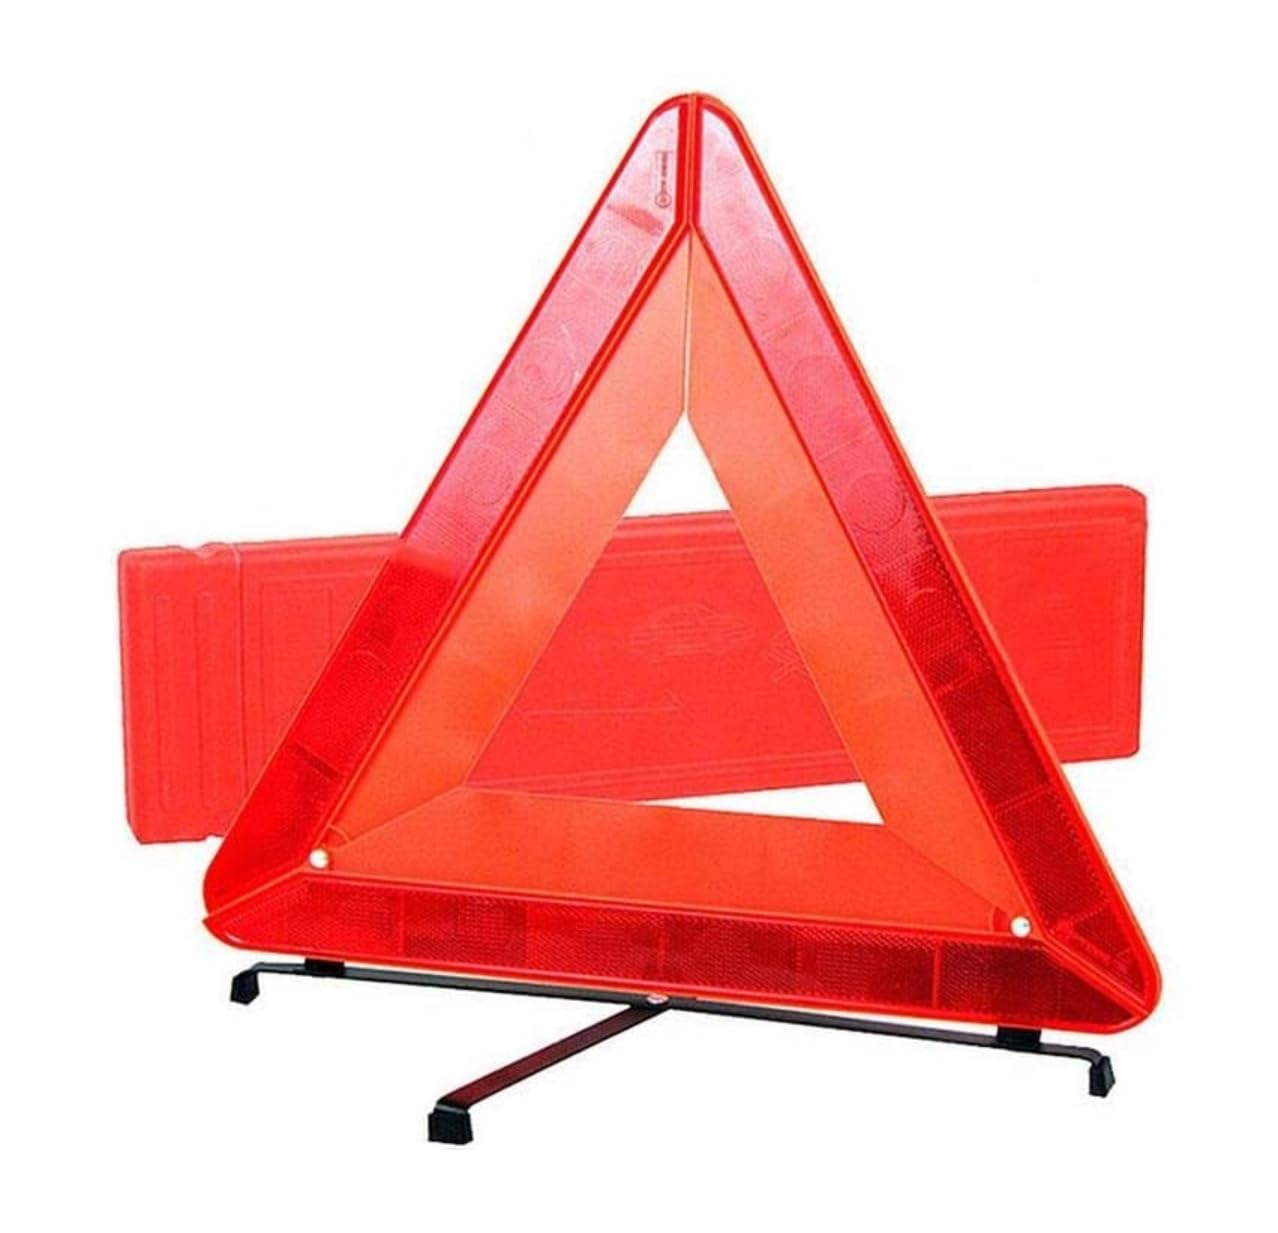 Reemky Warnung Reflektierendes Dreieck Faltbarer Dreieck Reflektor Alarme Auto Notfall Kit Straßenrand Warnschild mit Tragetasche für Auto Fahrzeuge LKW RV Tractor Trailer (1 Pack) von Reemky